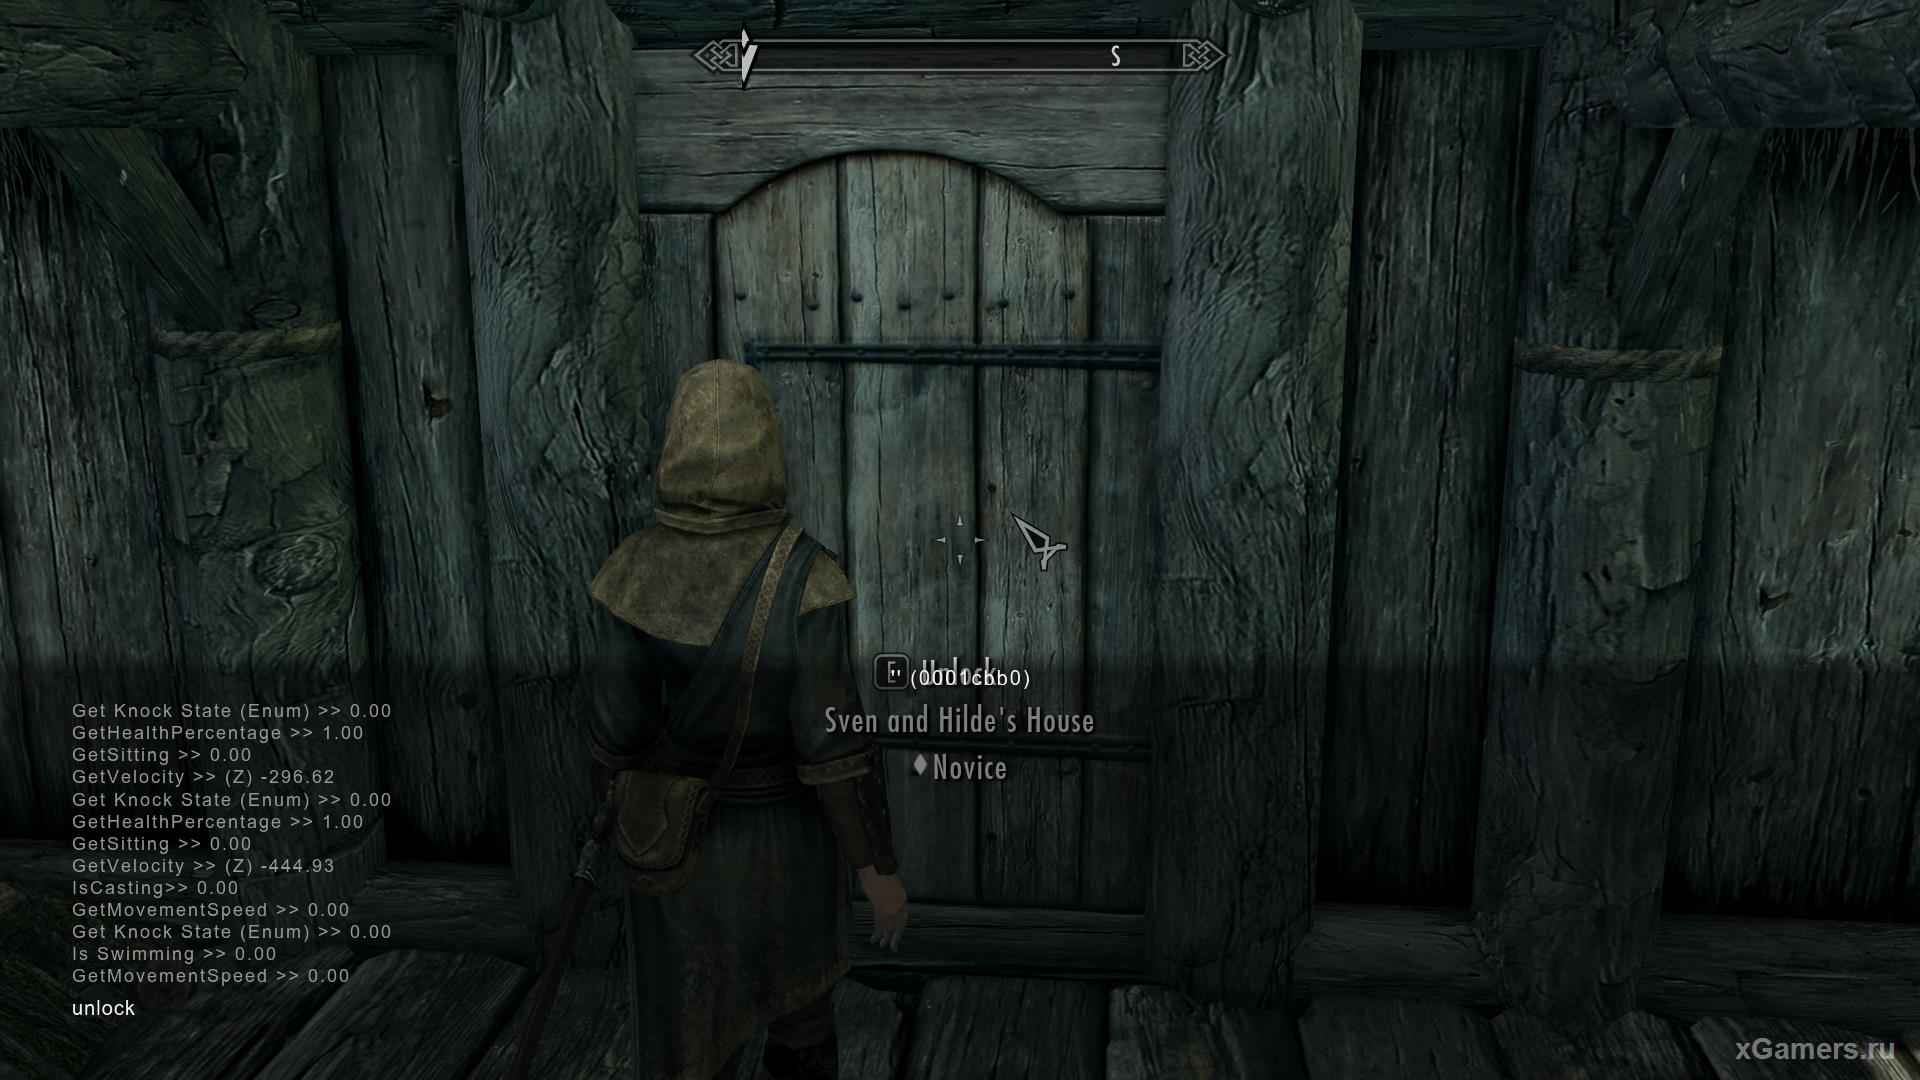 How to open the door using a cheat in Skyrim